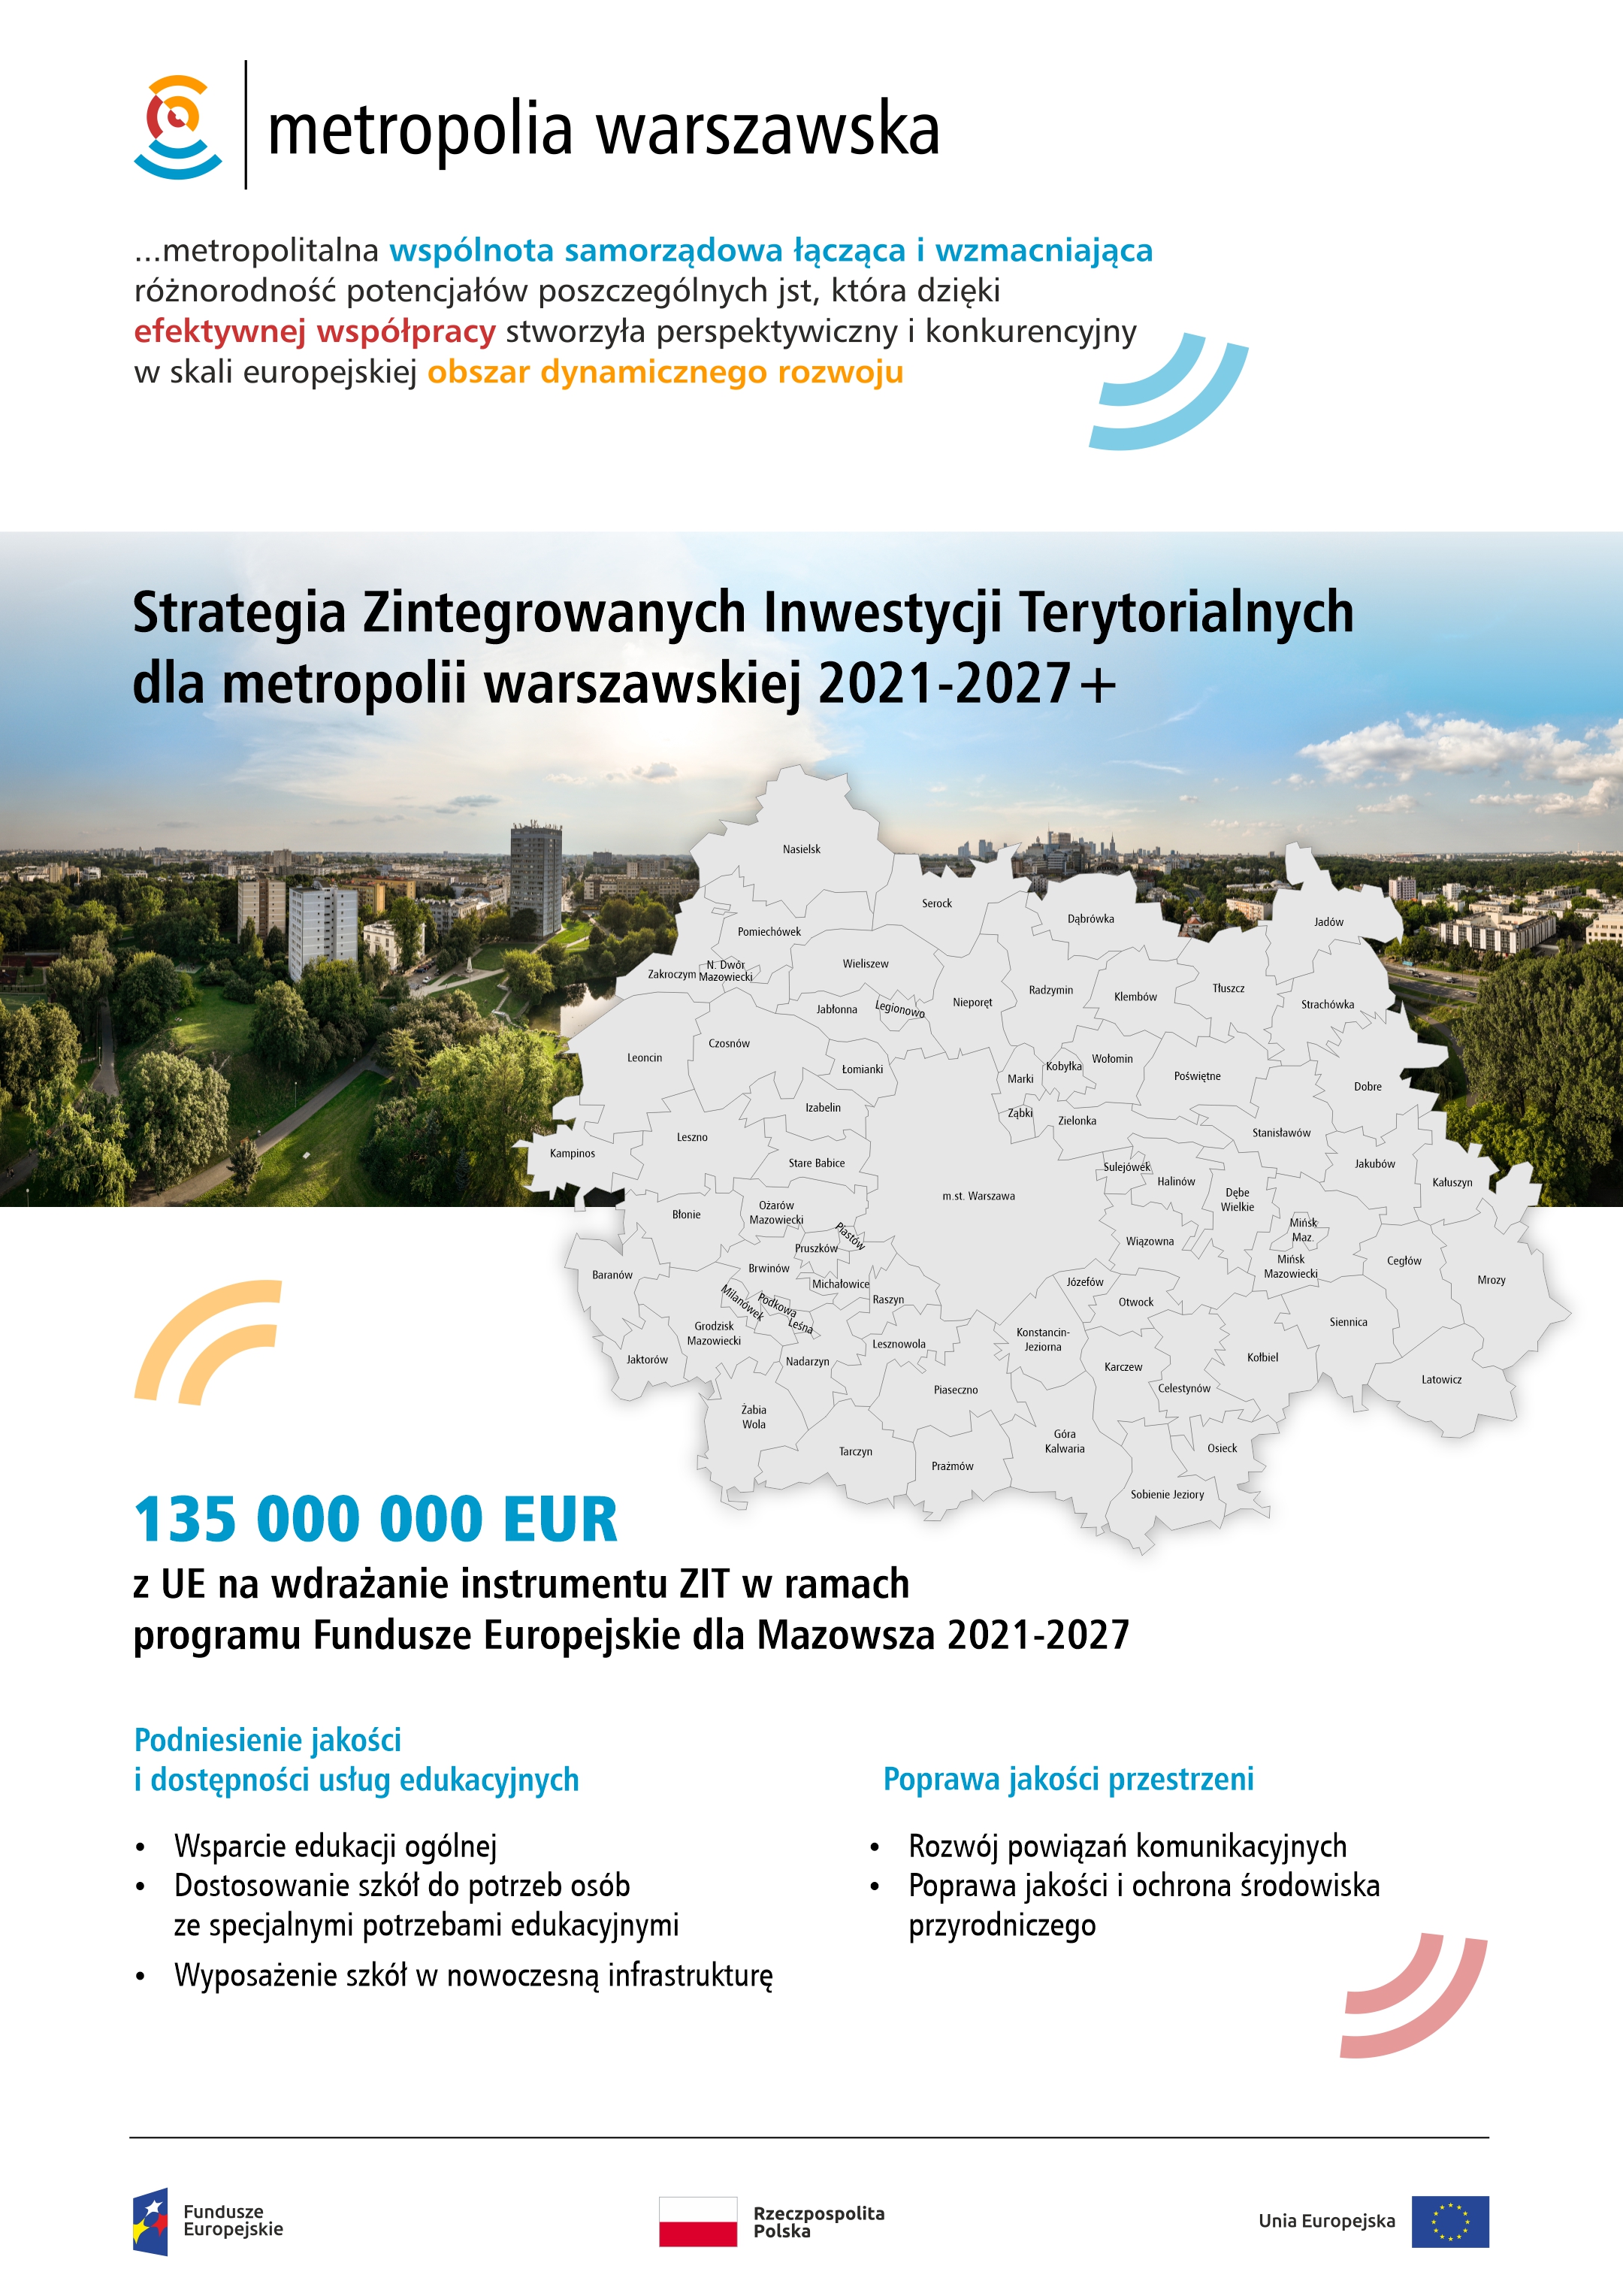 Strategia Zintegrowanych Inwestycji Terytorialnych dla metropolii warszawskiej 2021-2027+